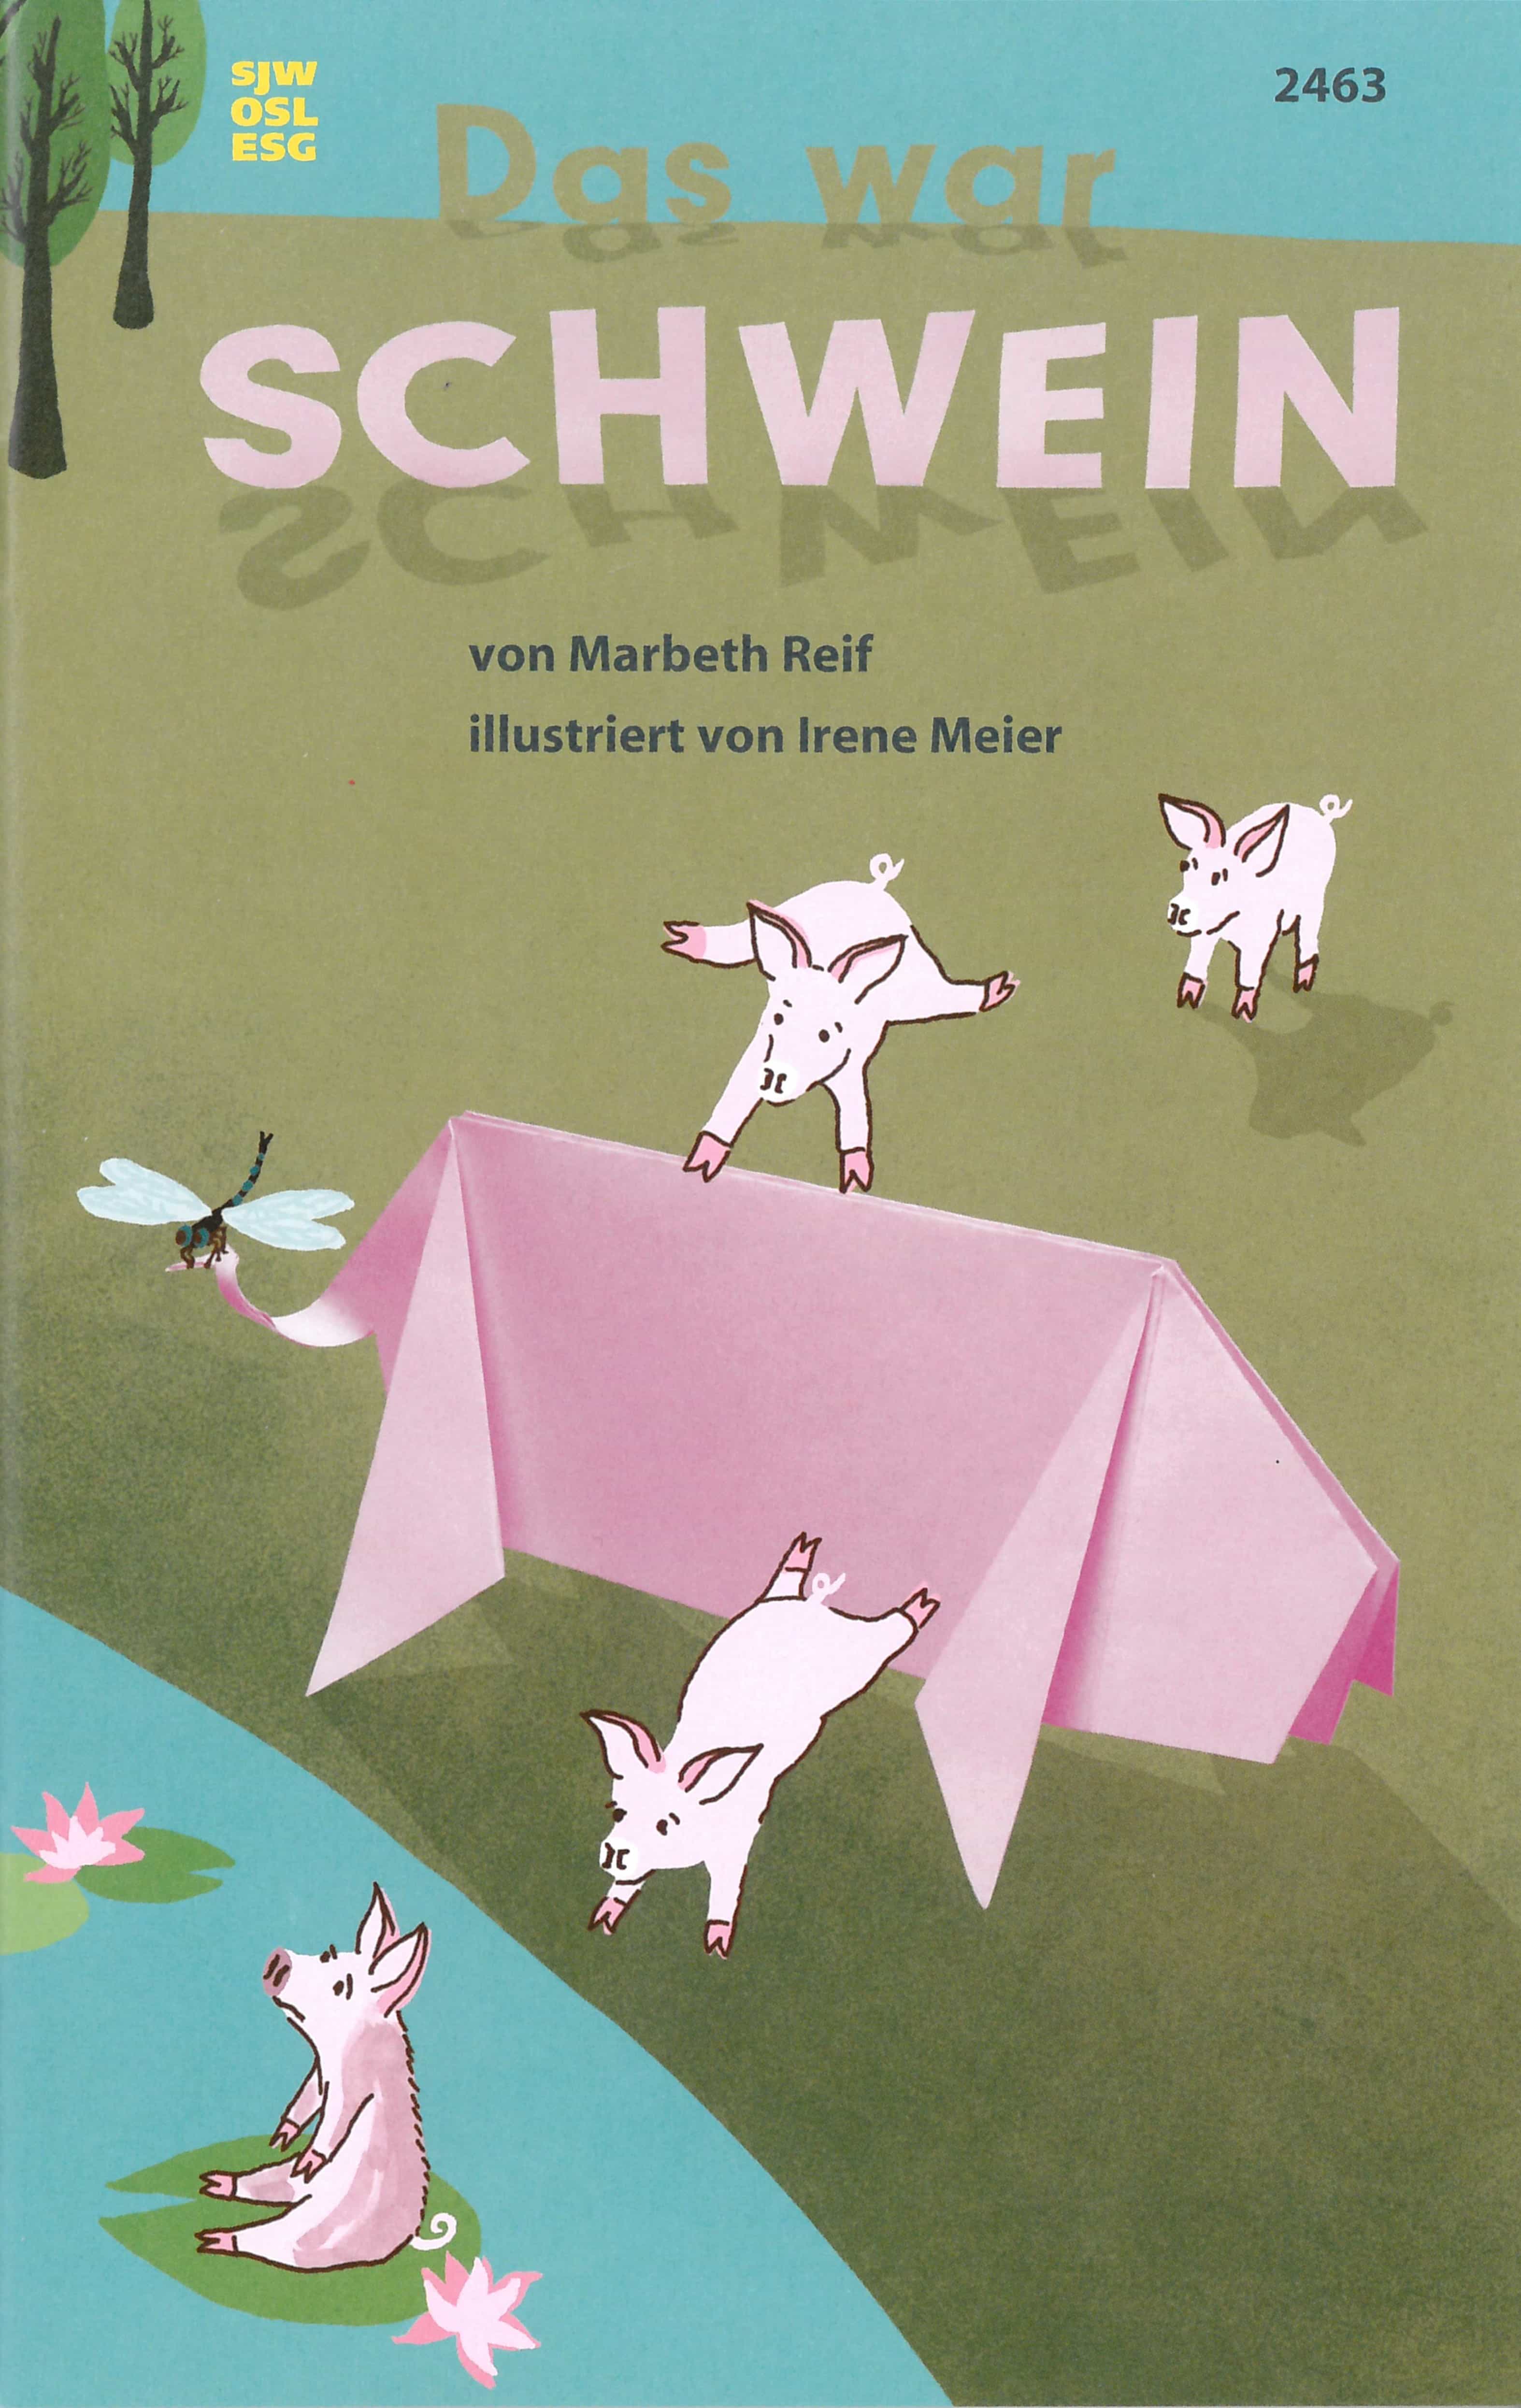 Das war Schwein, ein Kinderbuch von Marbeth Reif, Illustration von Irene Meier, SJW Verlag, Basteln